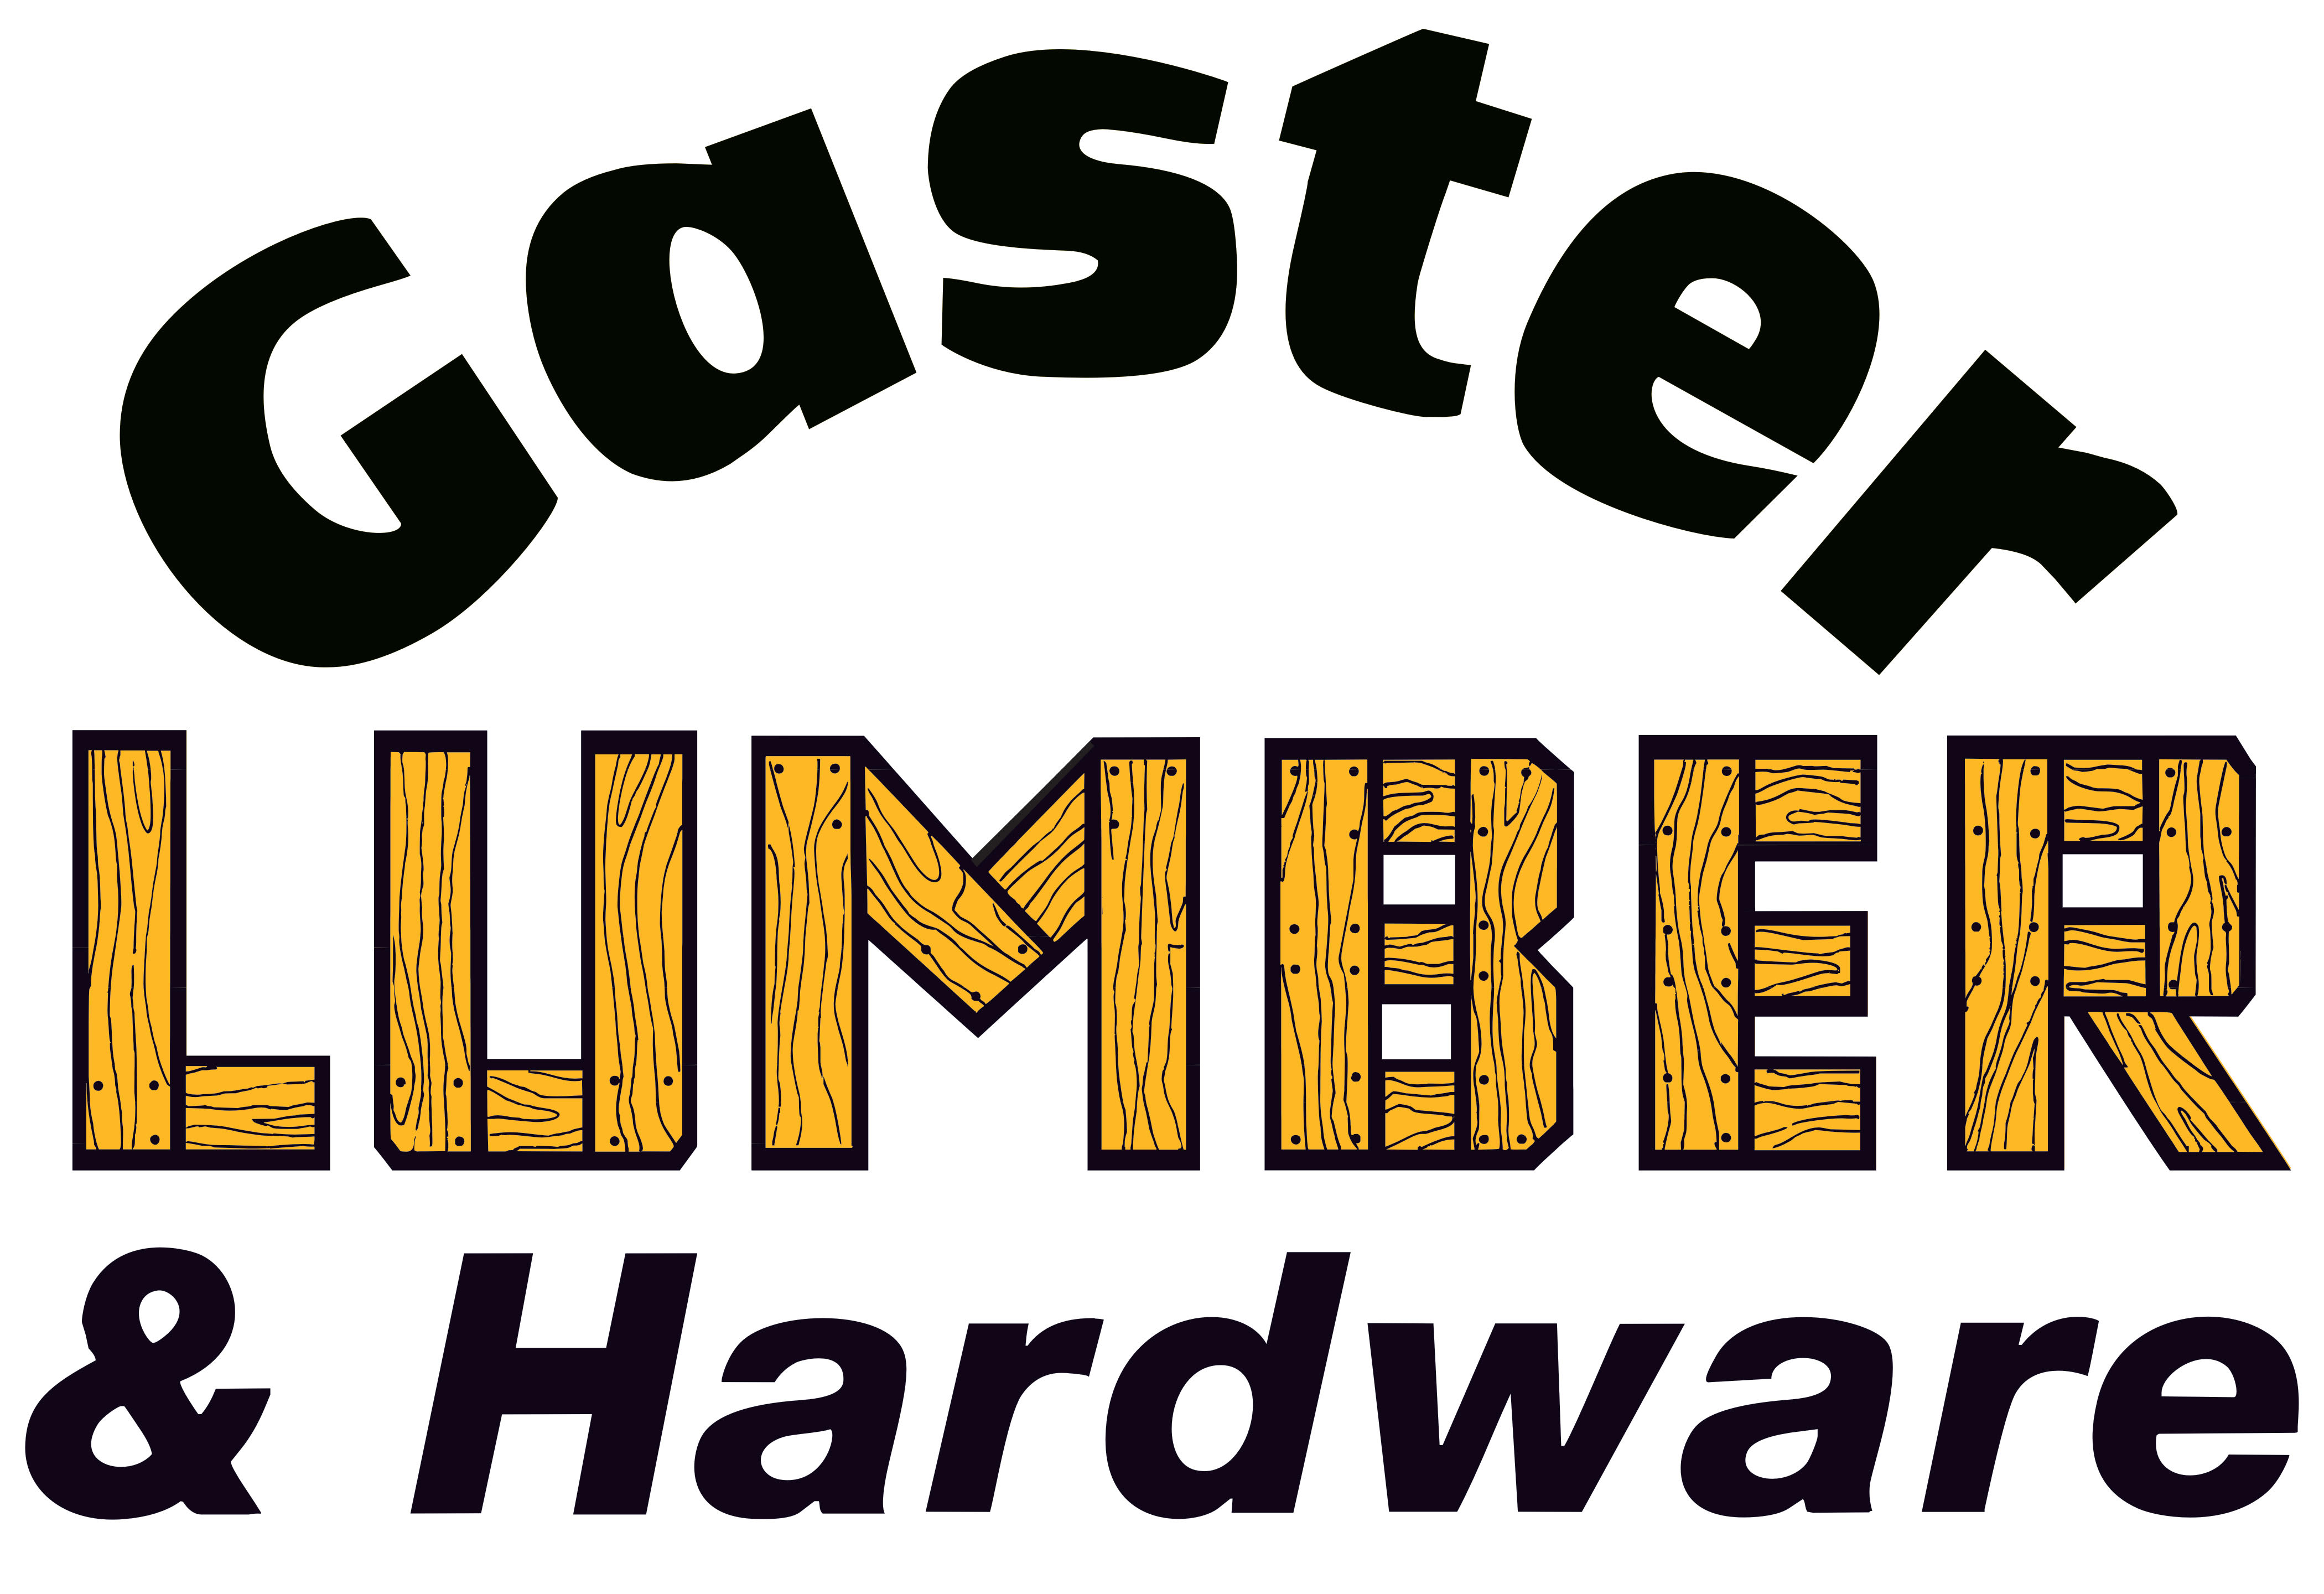 Gaster Lumber & Hardware